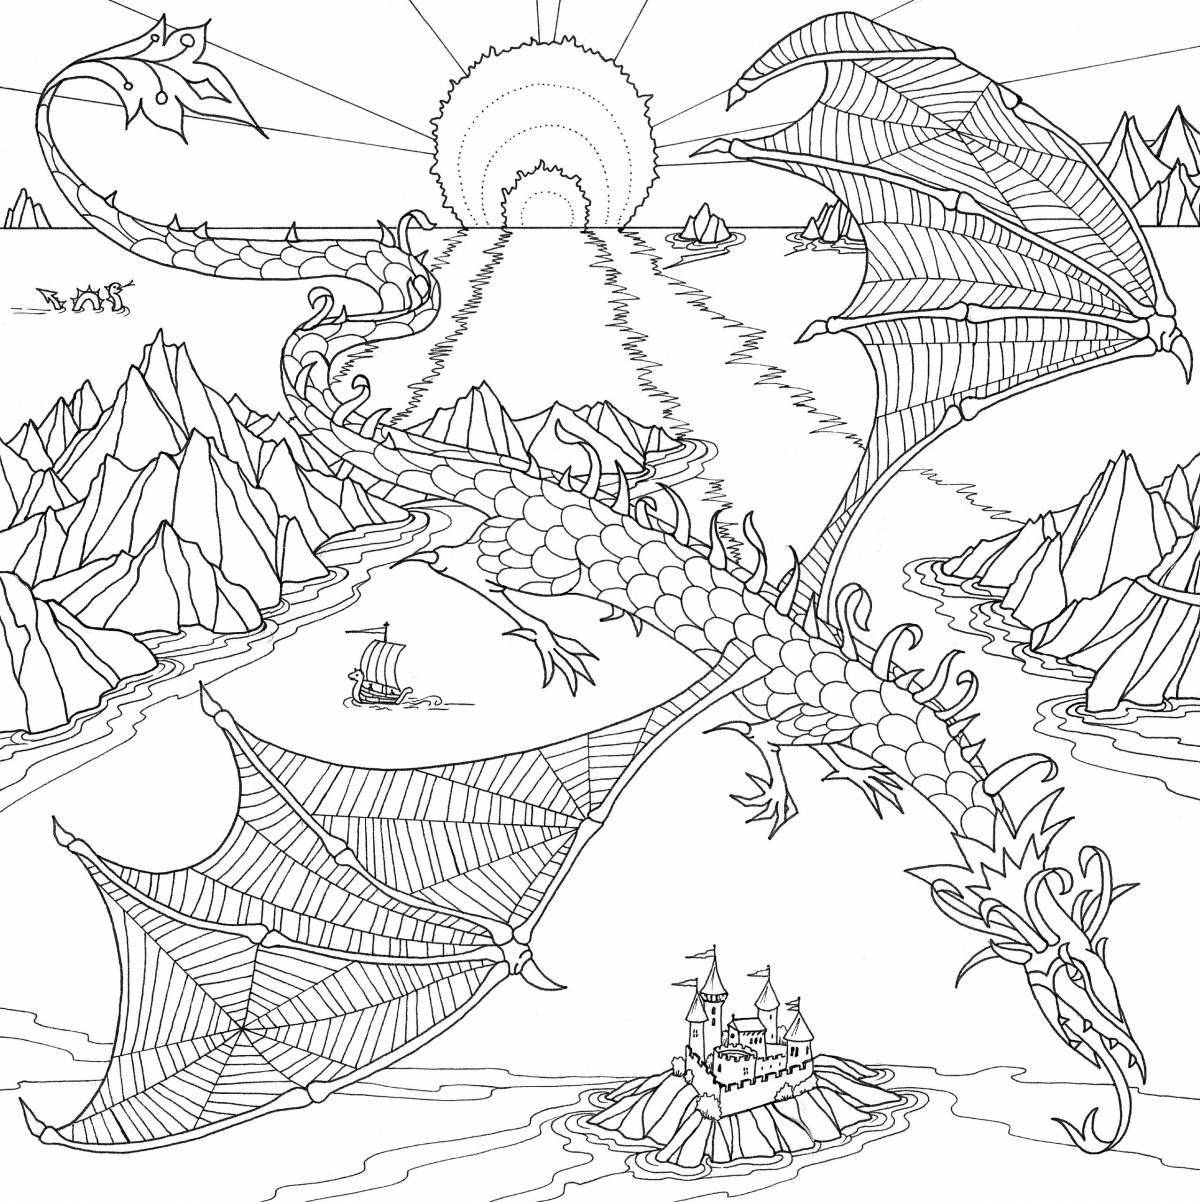 Impressive magic dragon coloring page